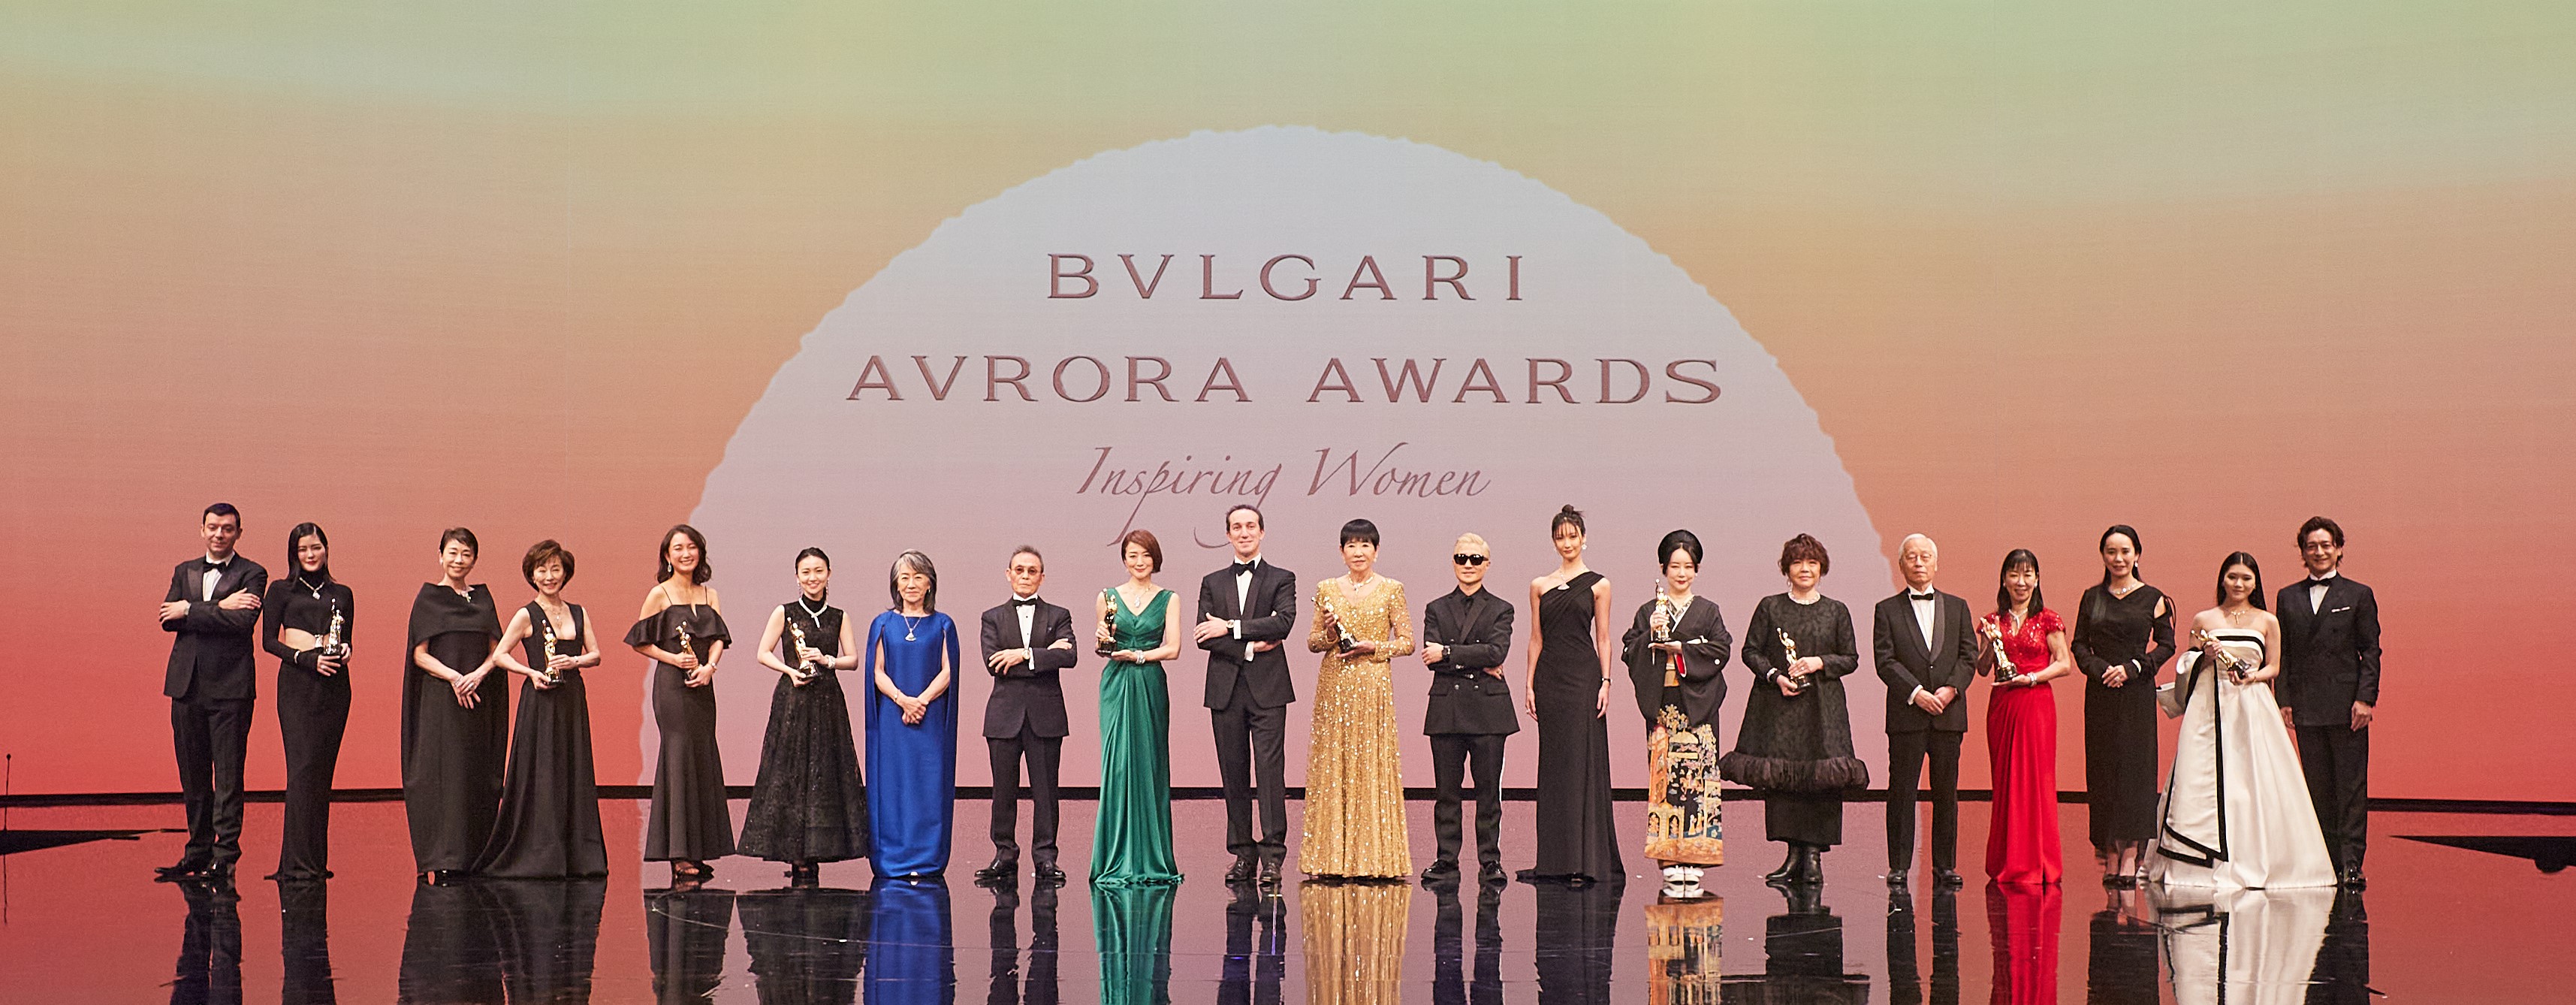 第5回 ブルガリ アウローラ アワード21 を開催 ブルガリ ジャパン株式会社のプレスリリース